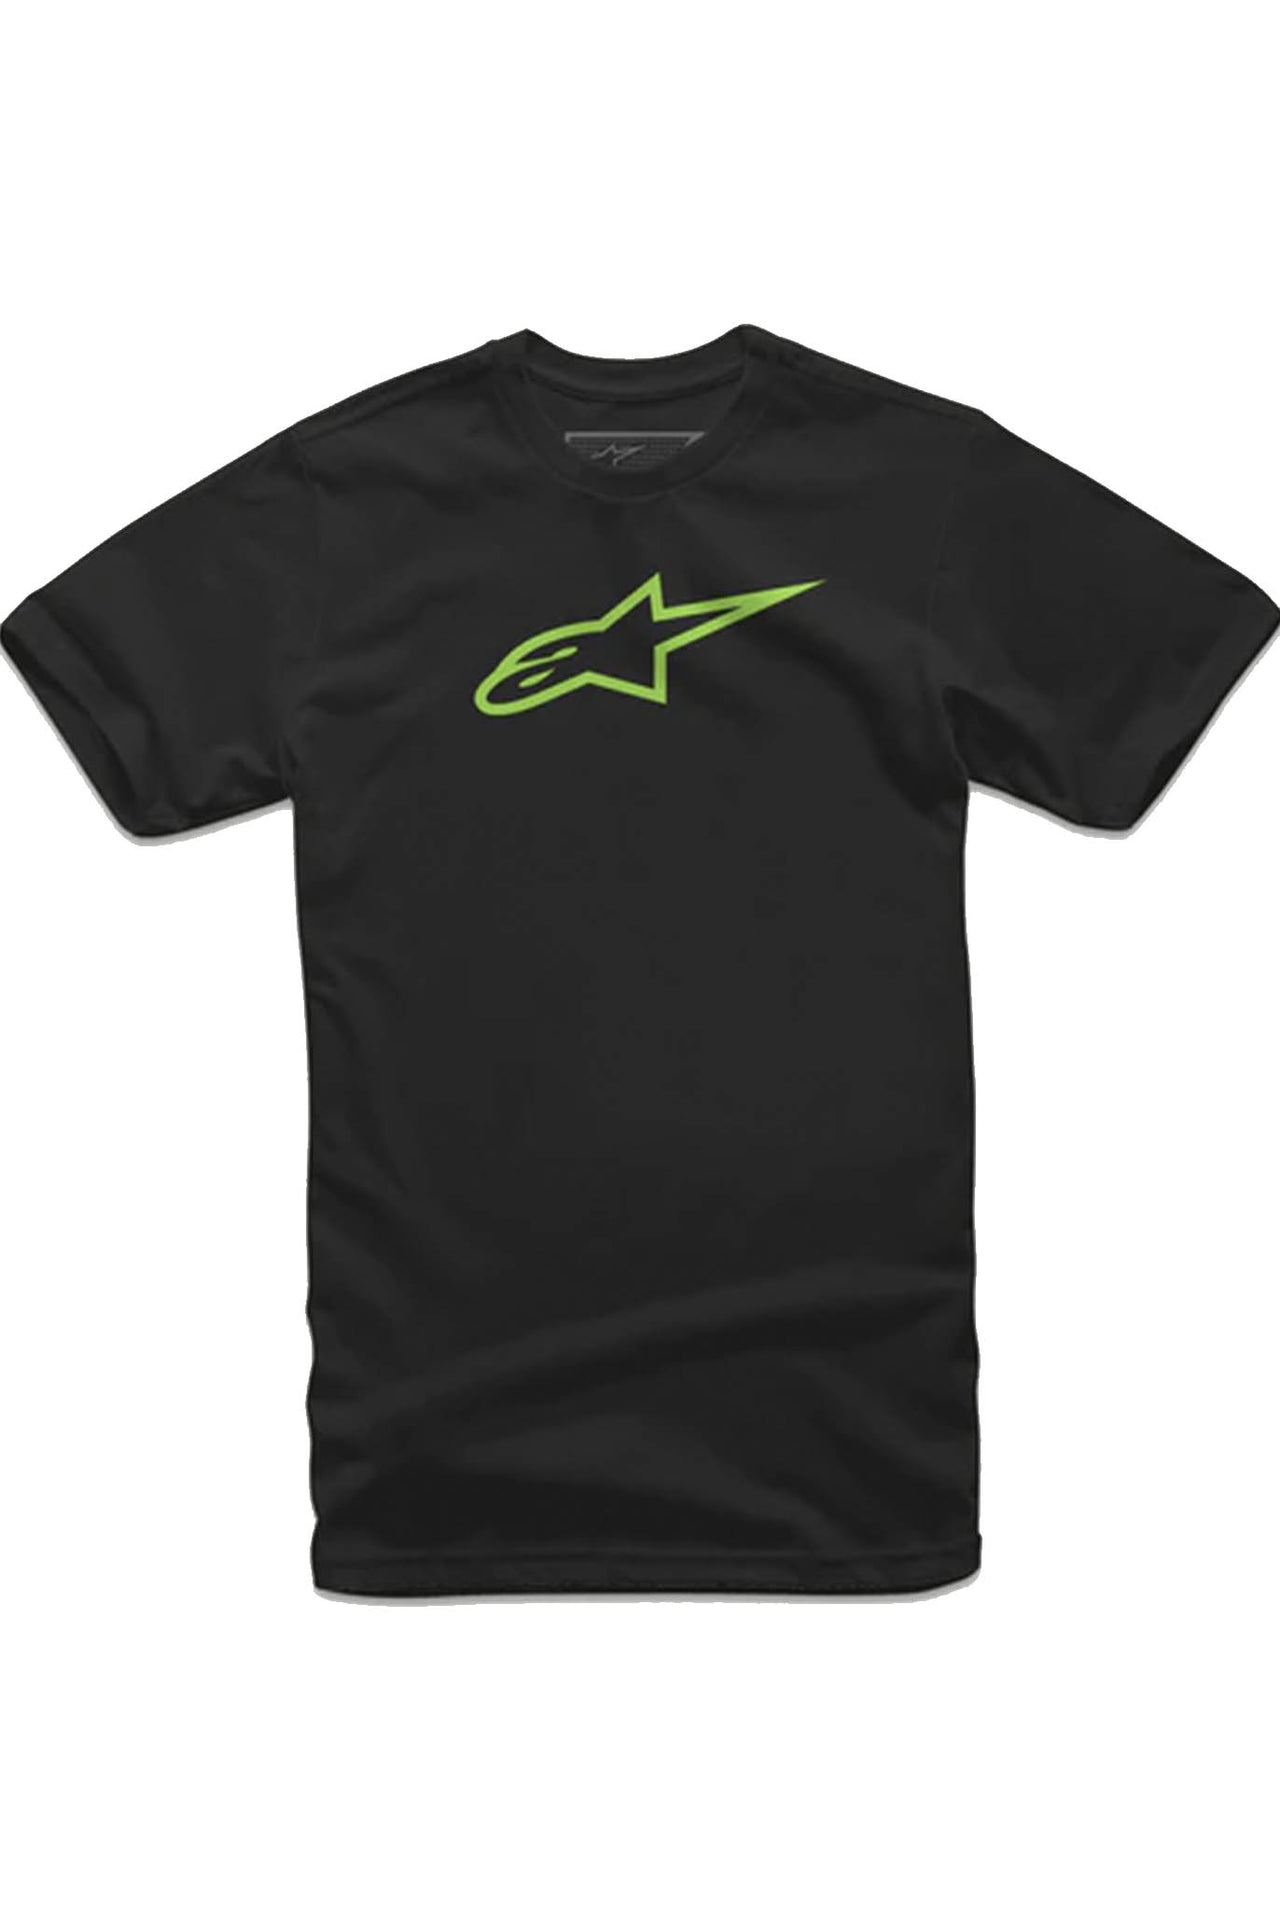 Camiseta Alpinestars Ageless Classic Negro/Verde